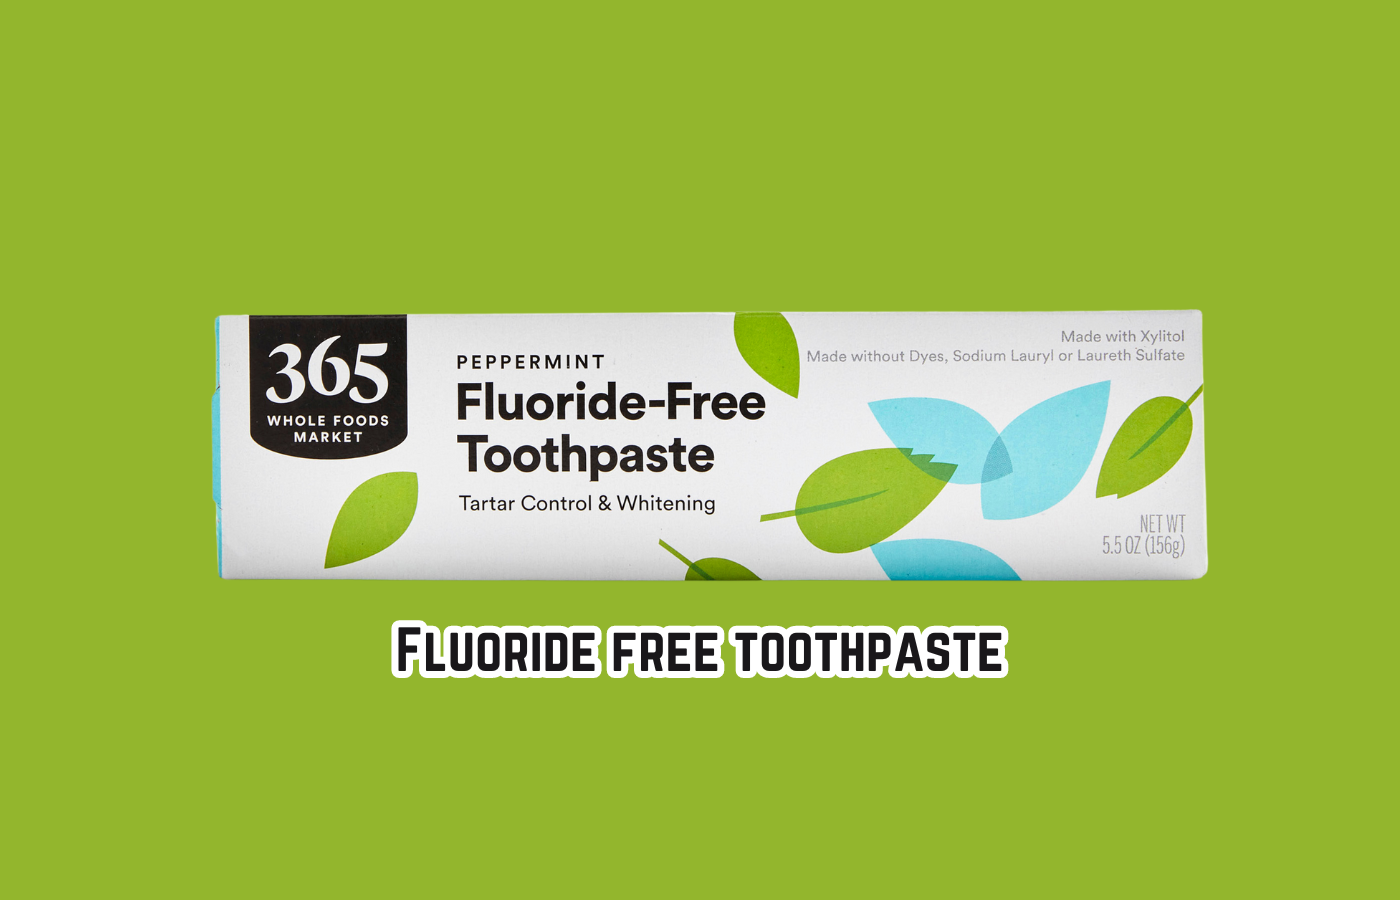 Fluoride free toothpaste